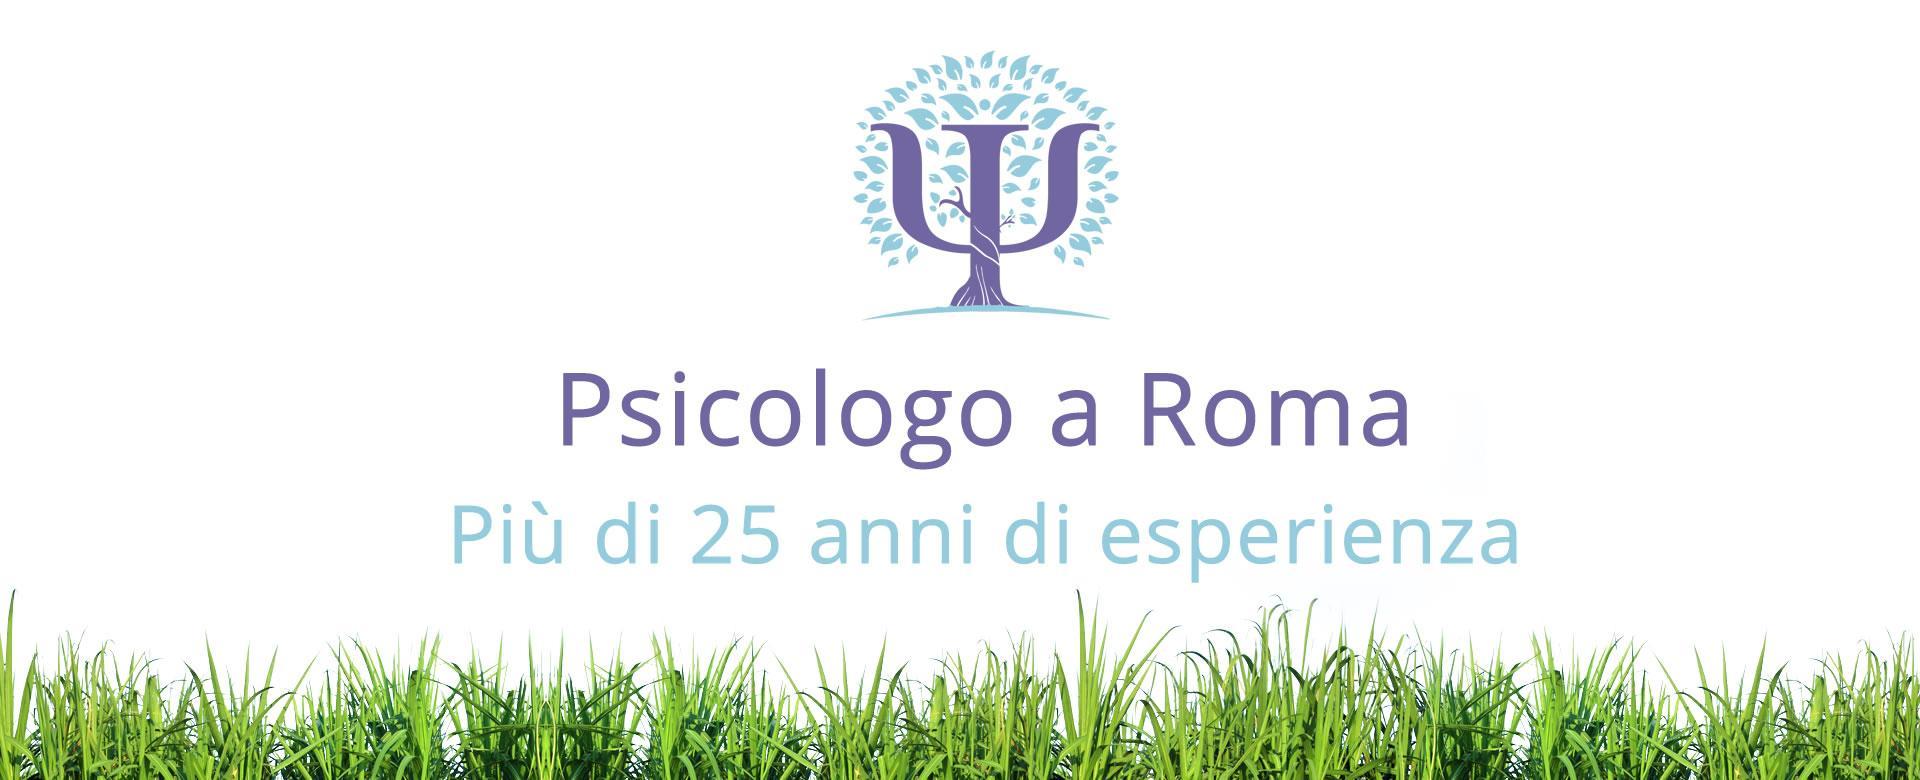 Psicologo a Roma